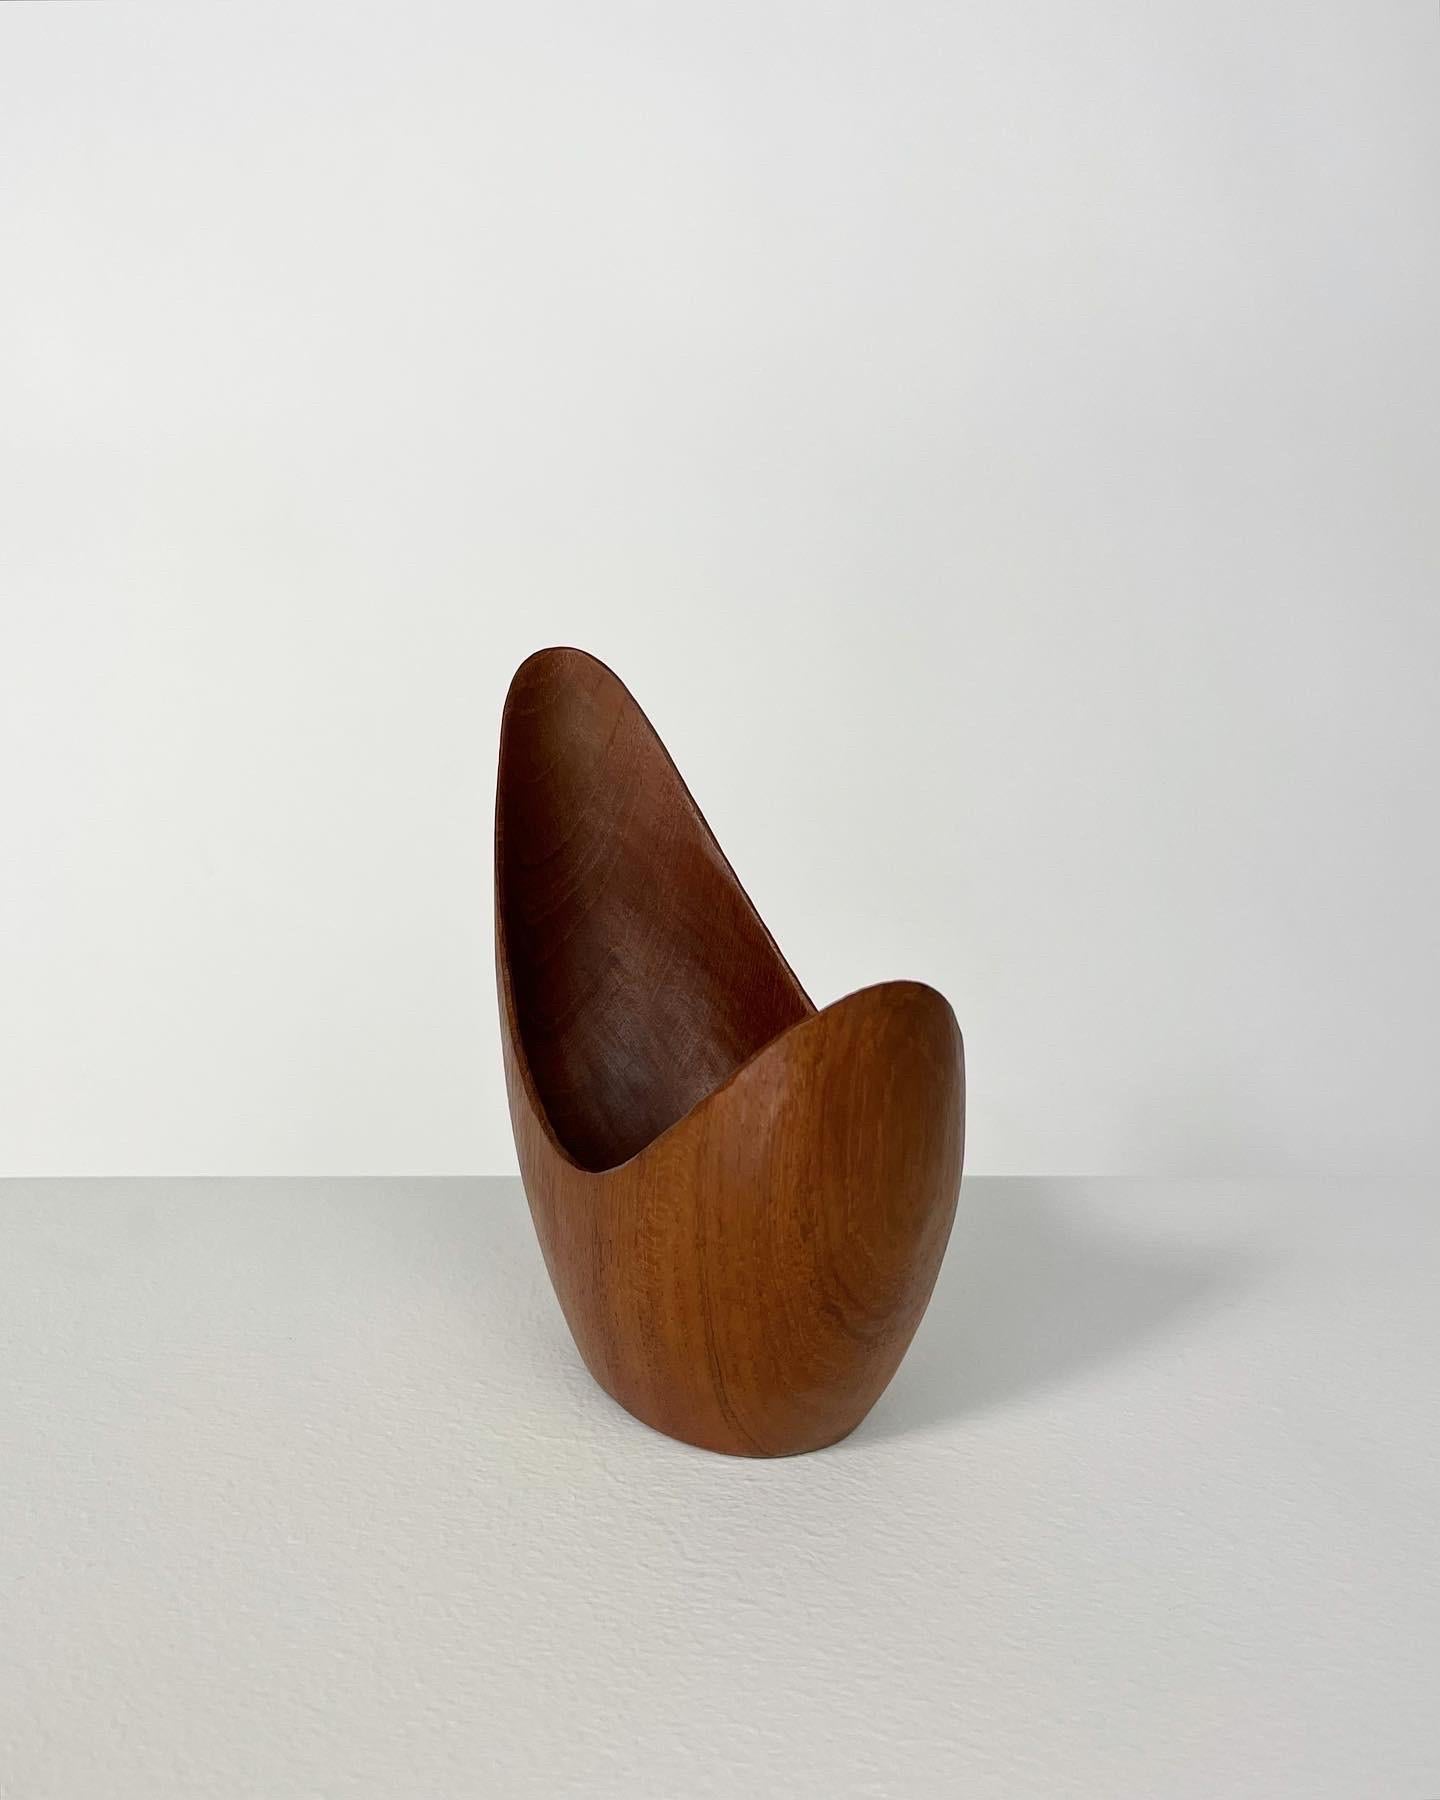 Swedish Stig Sandkvist Teak Bowl Hand Carved Sweden 1950s Midcentury Design